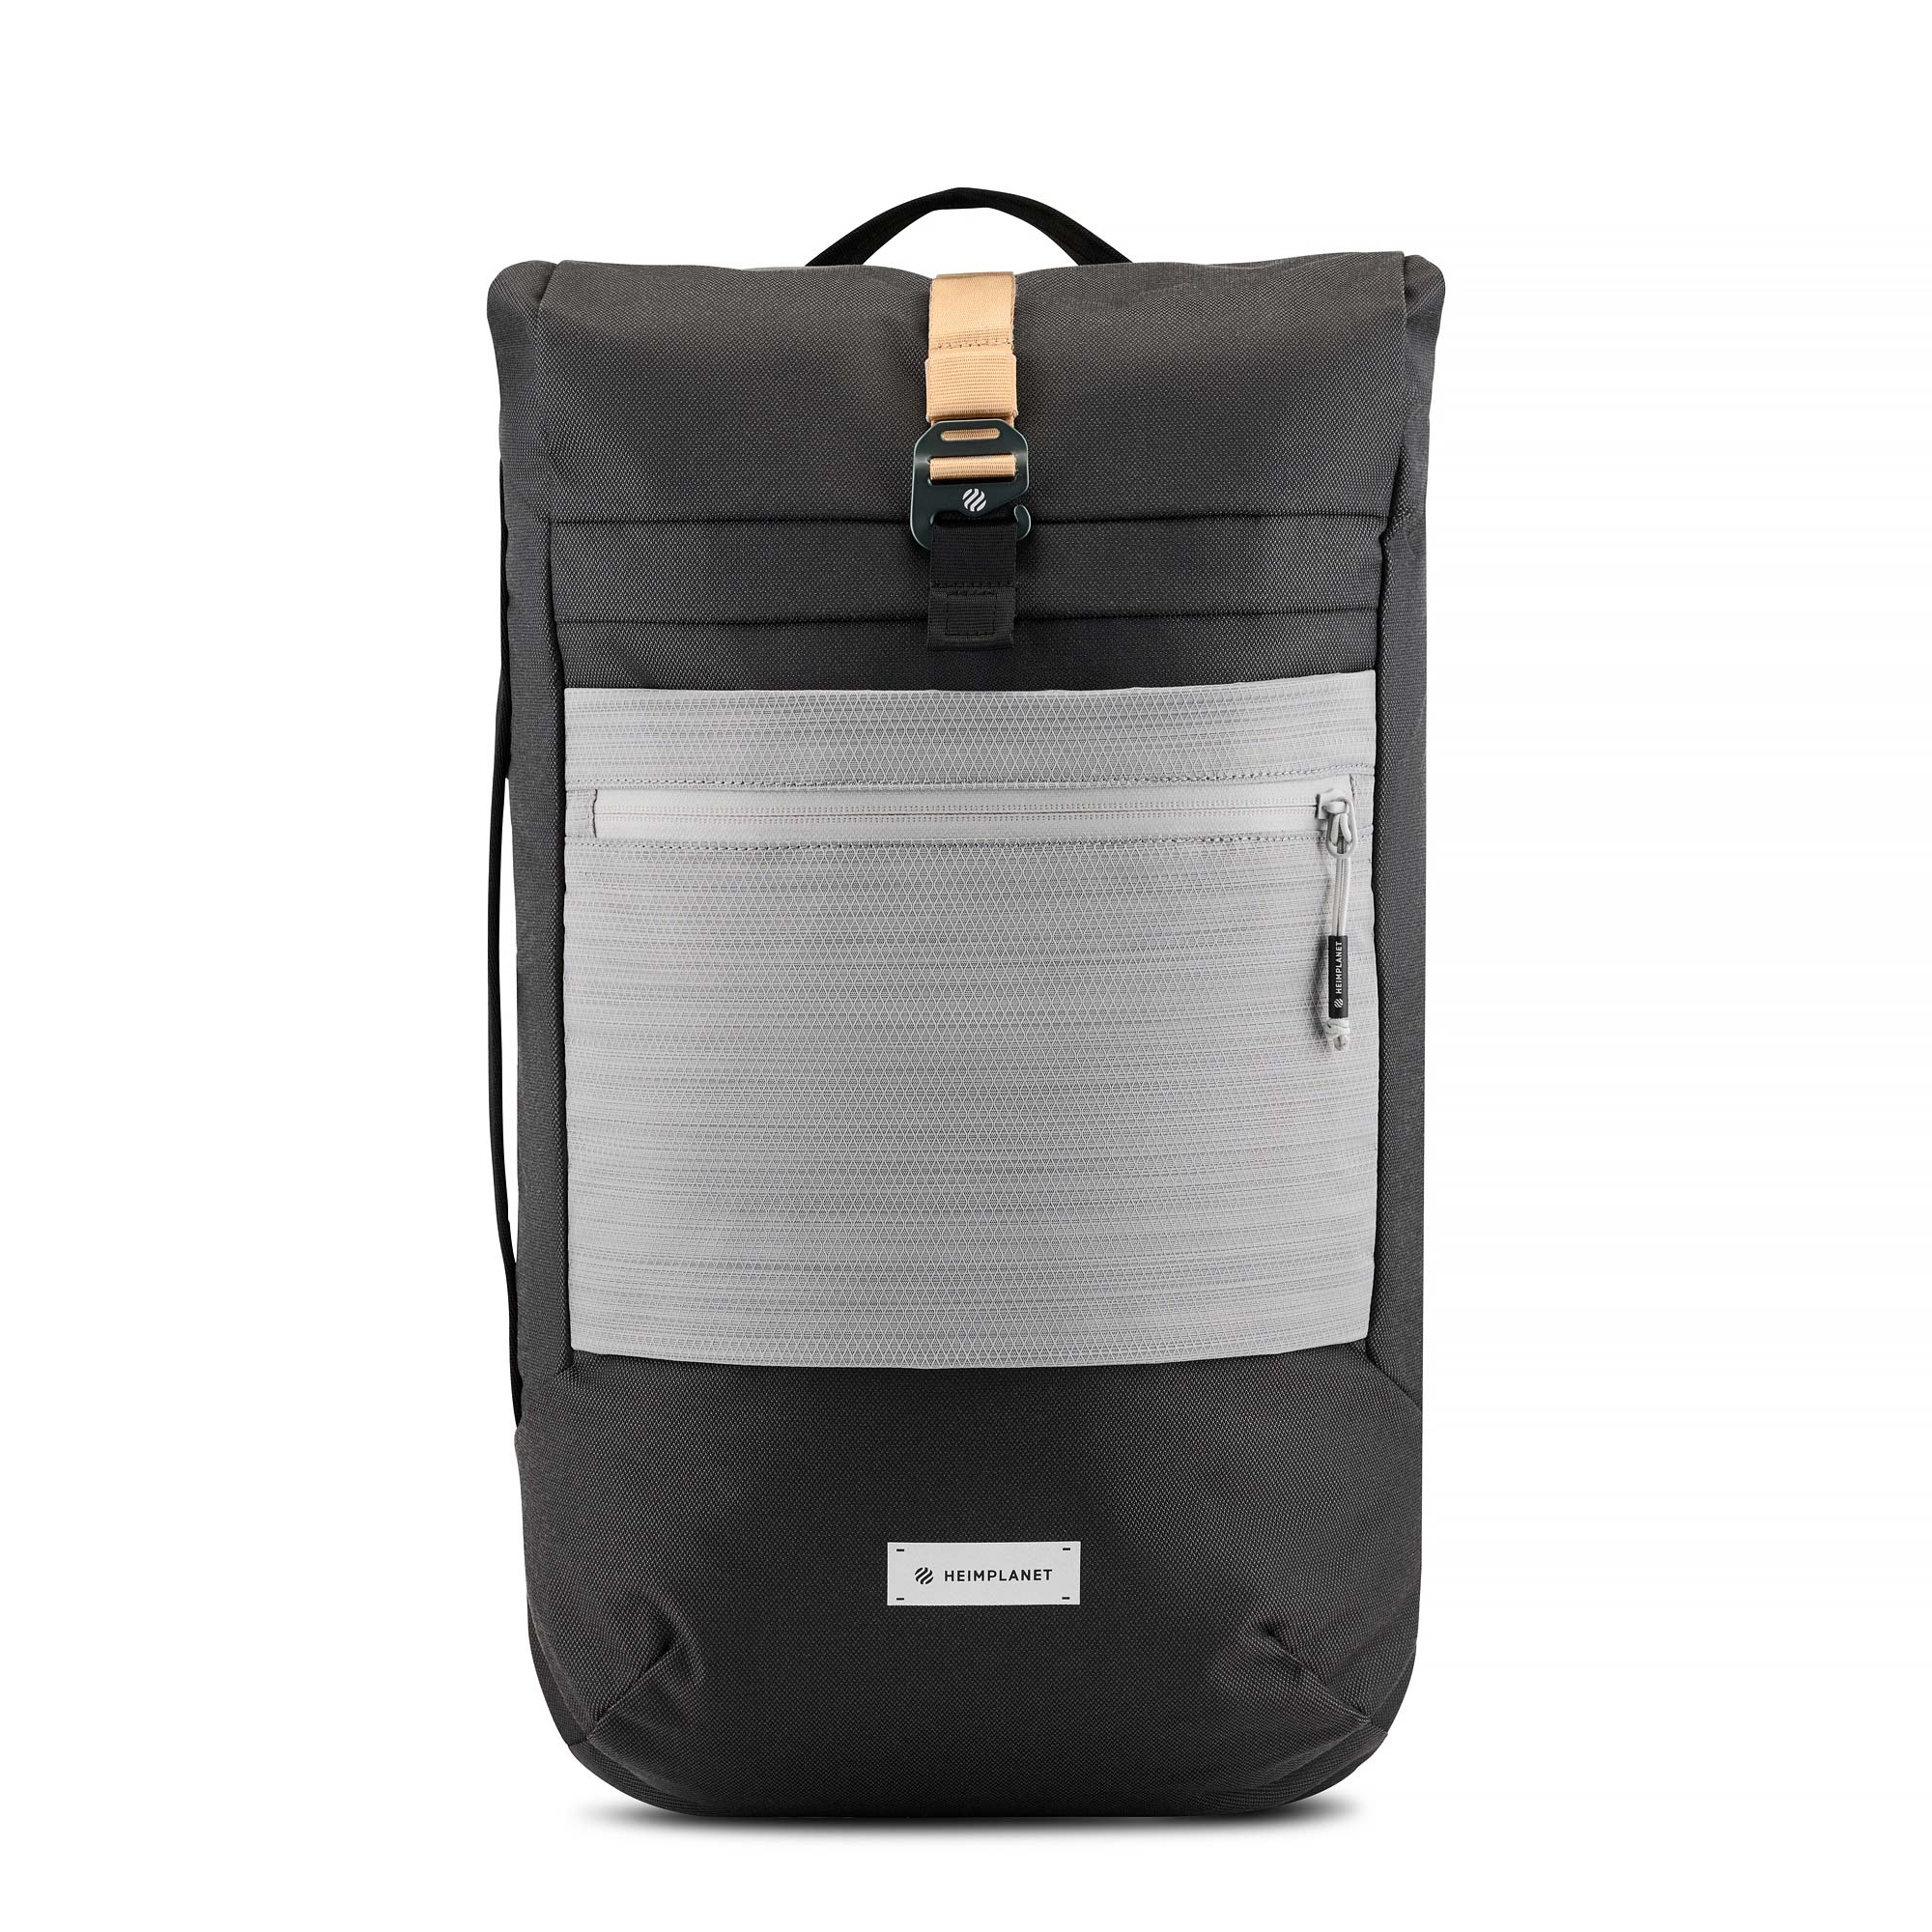 Monolith Dopp Kit - Travel Toilet Bag, HEIMPLANET